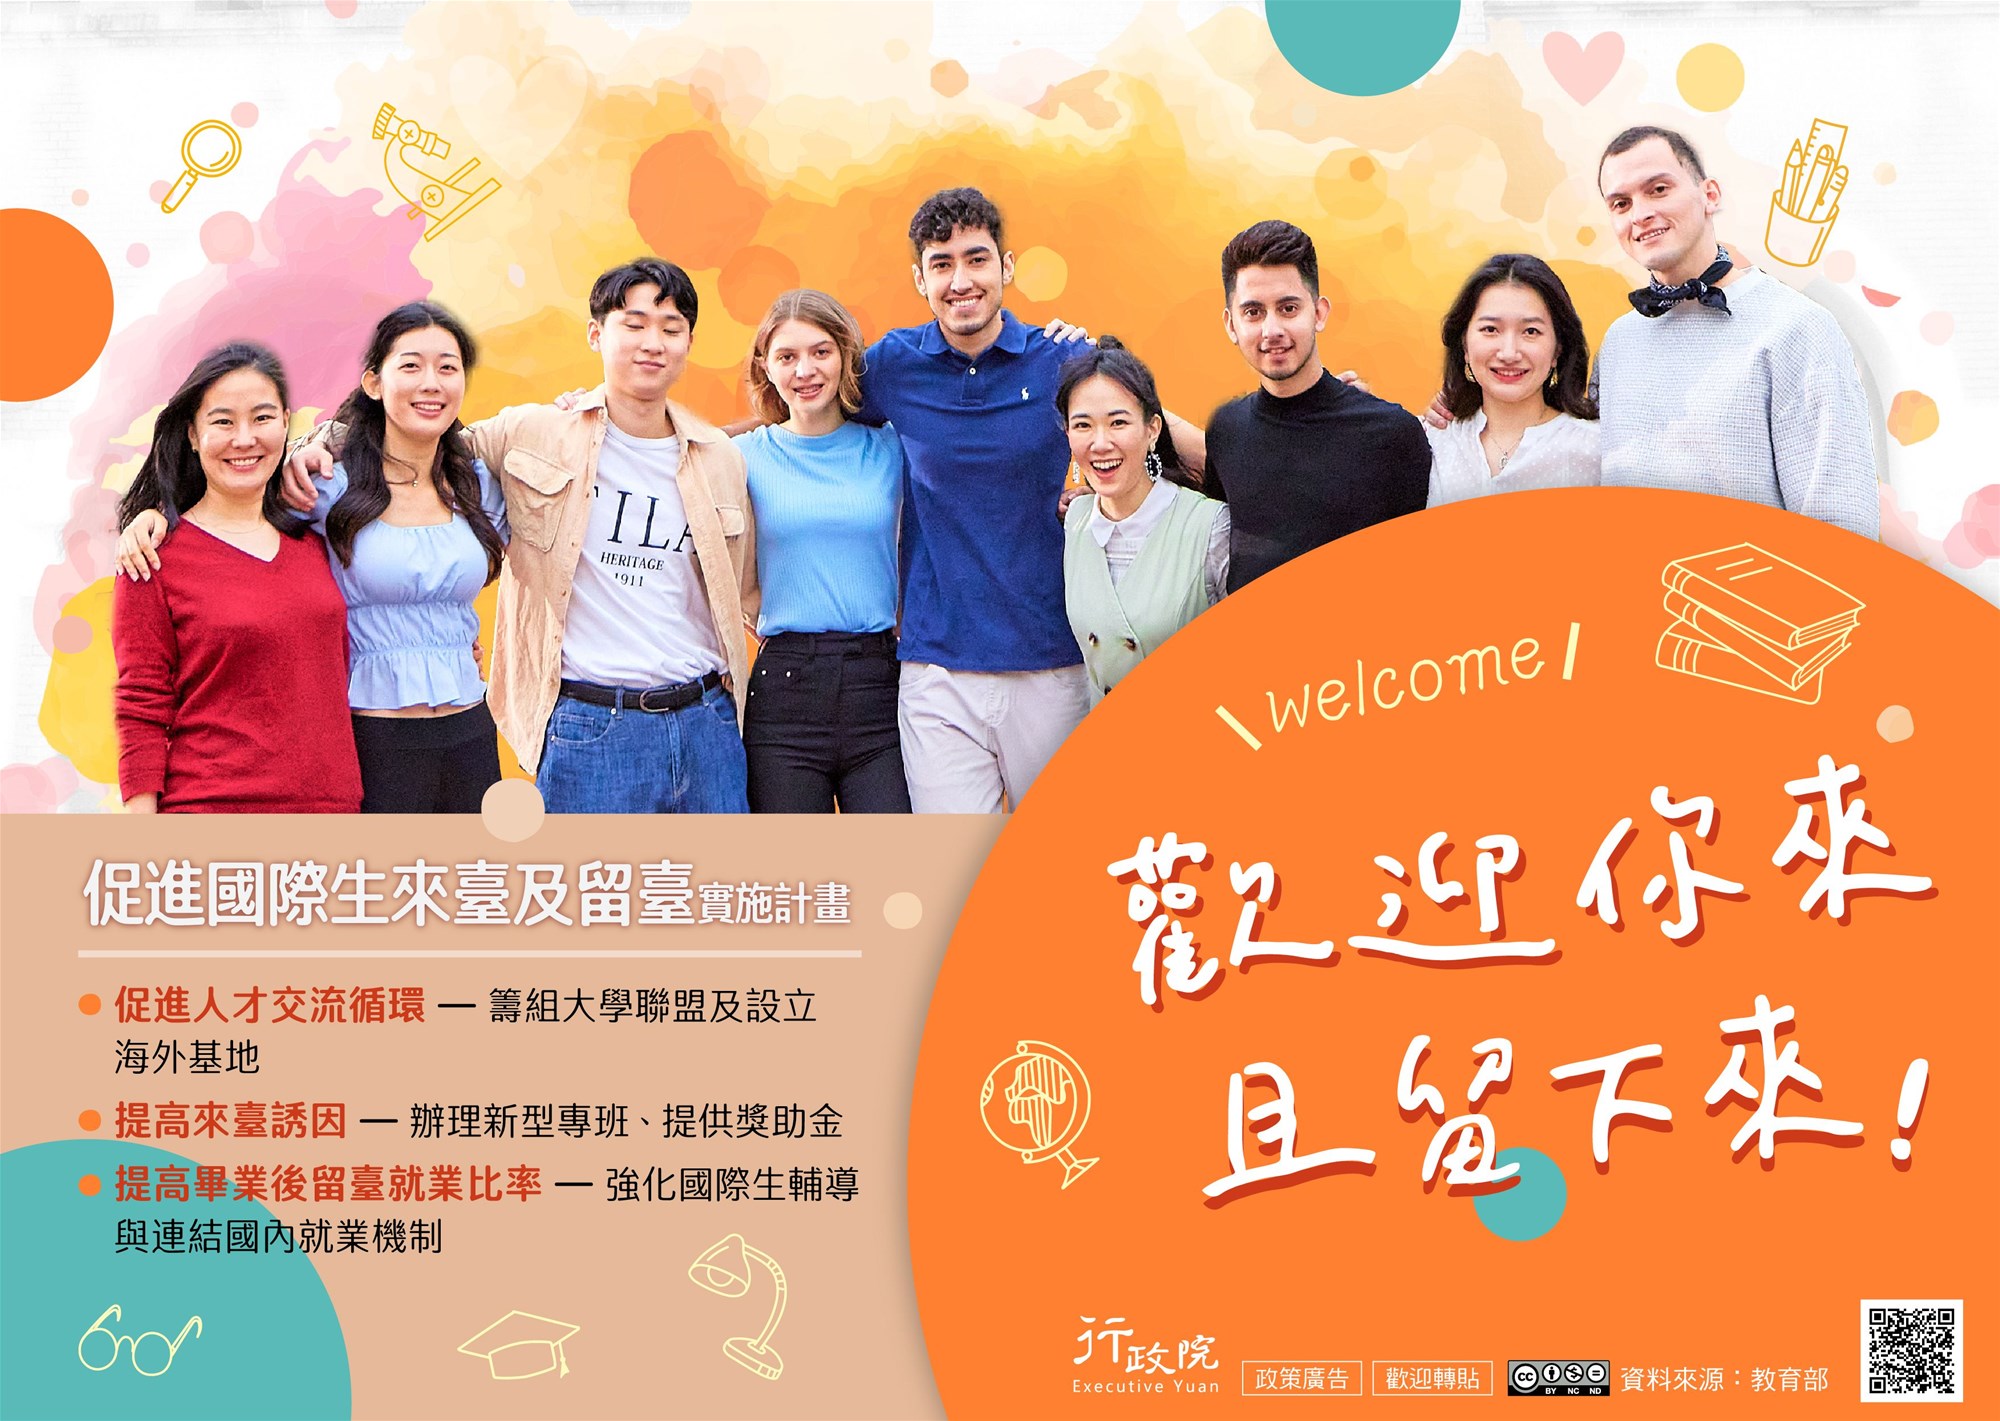 Thúc đẩy sinh viên quốc tế đến và ở lại Đài Loan